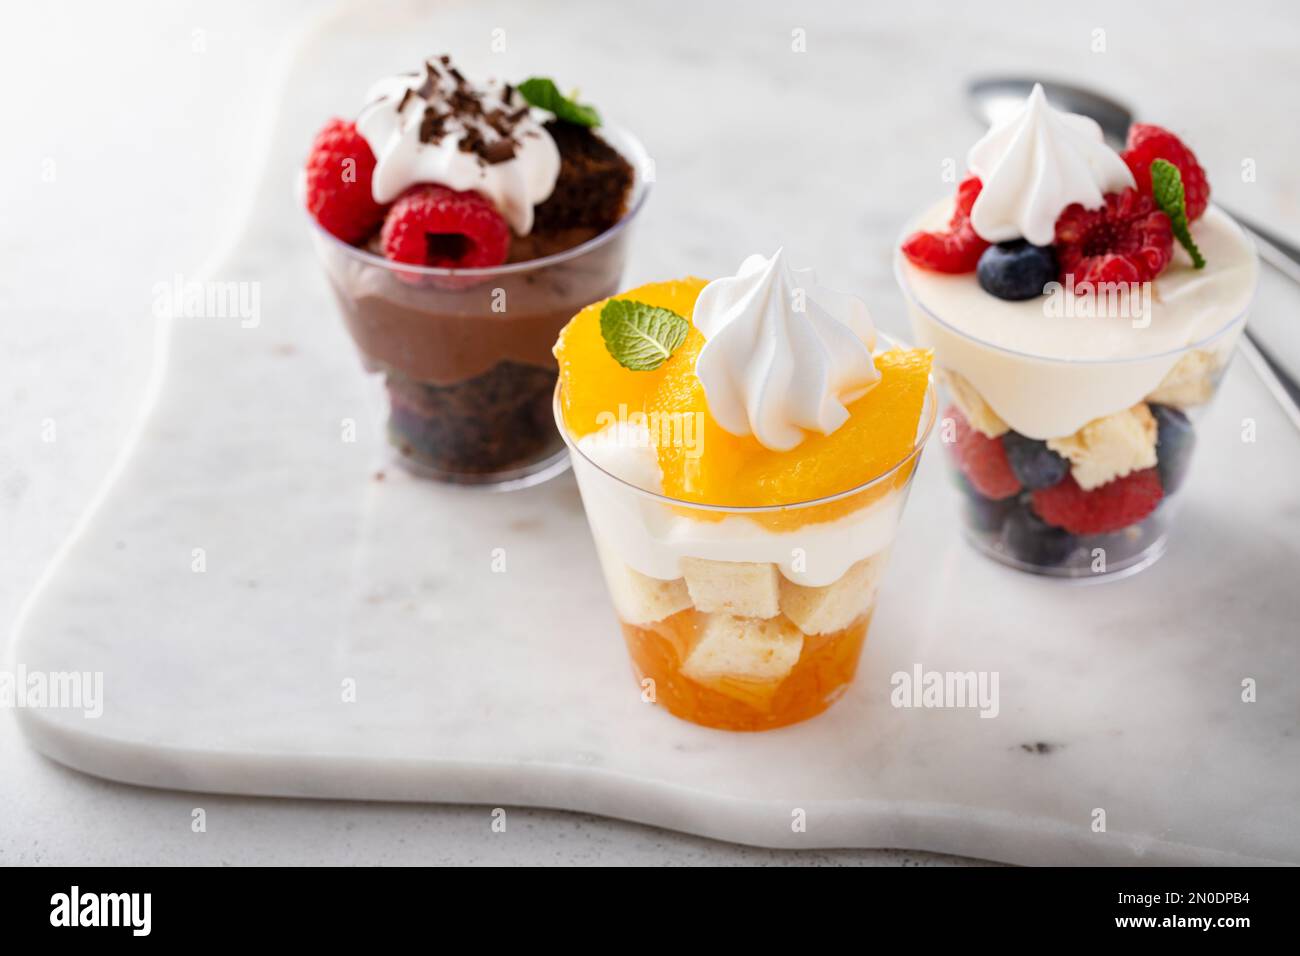 Auswahl an kleinen Desserts in Tassen, Schokolade, Beeren und Orangen Kleinigkeiten oder Parfaits Stockfoto